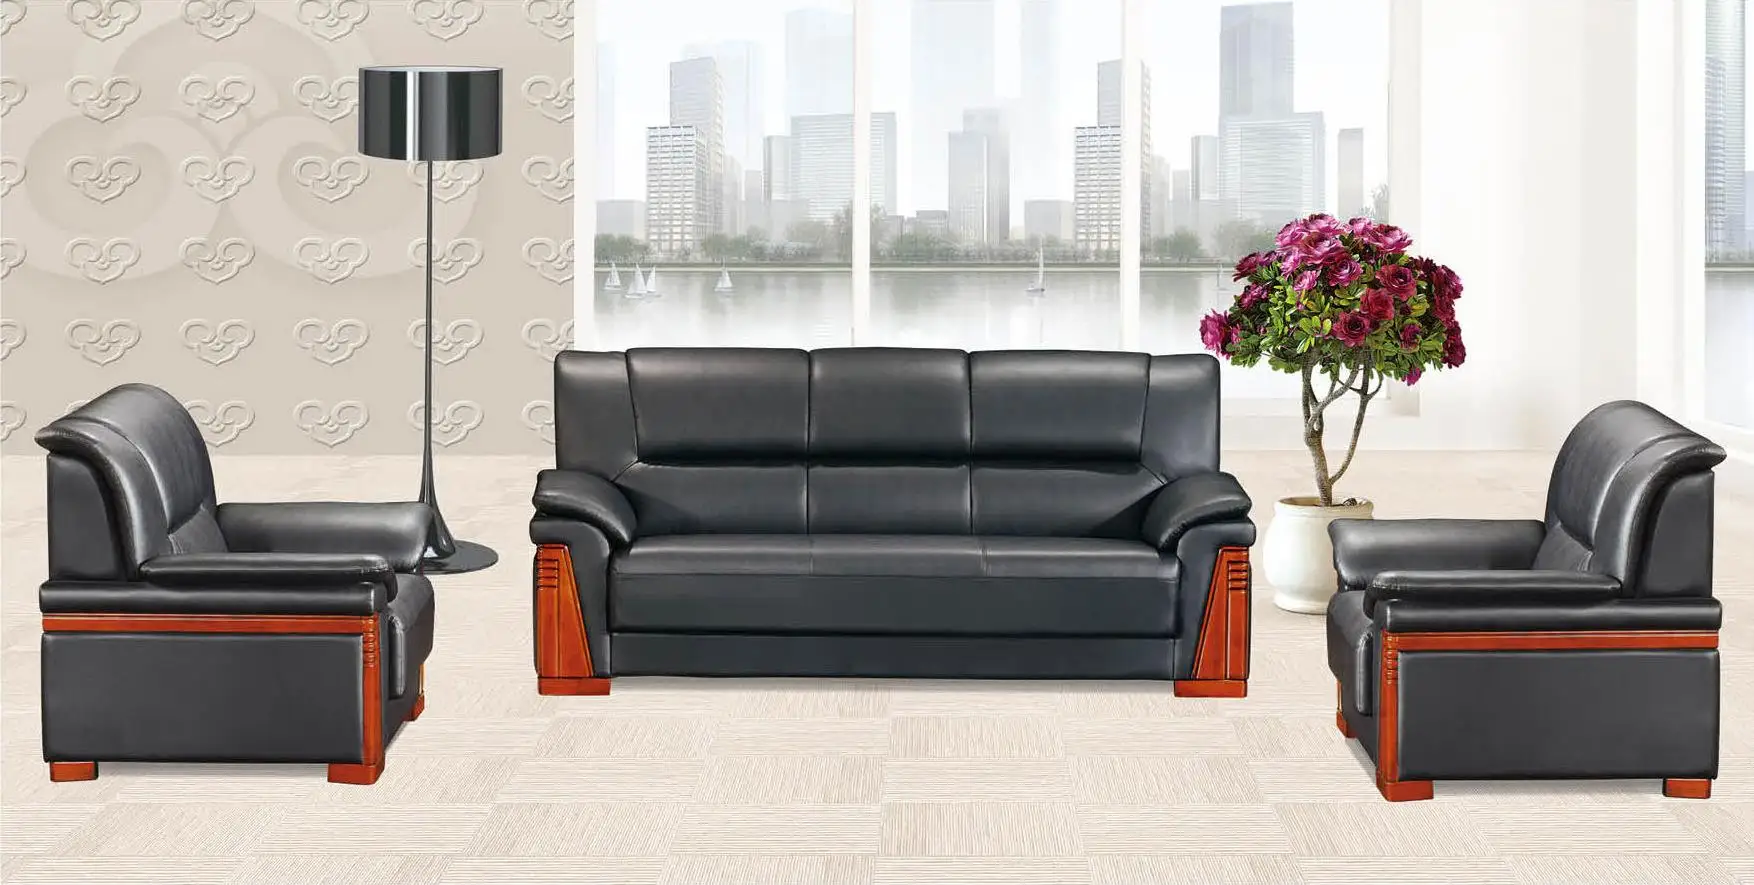 现代沙发  产品说明 办公家具接待沙发套 产品名称 synthnetic 真皮